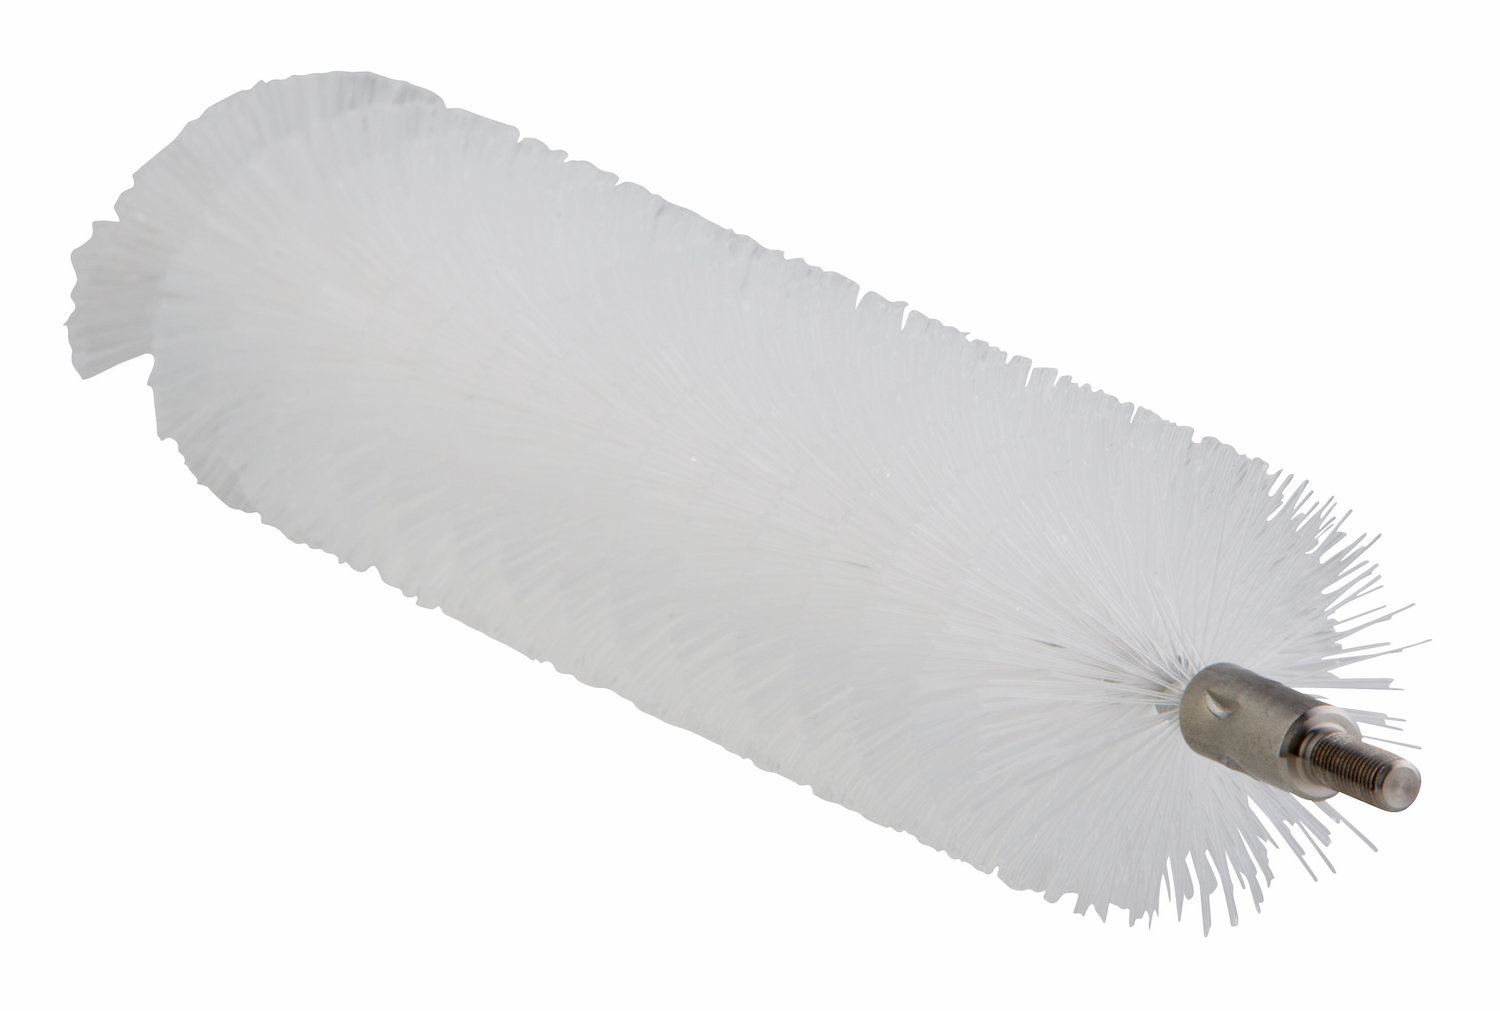 Tube Brush f/flexible handle 53515 or 53525, Ø40 mm, 200 mm, Medium, White